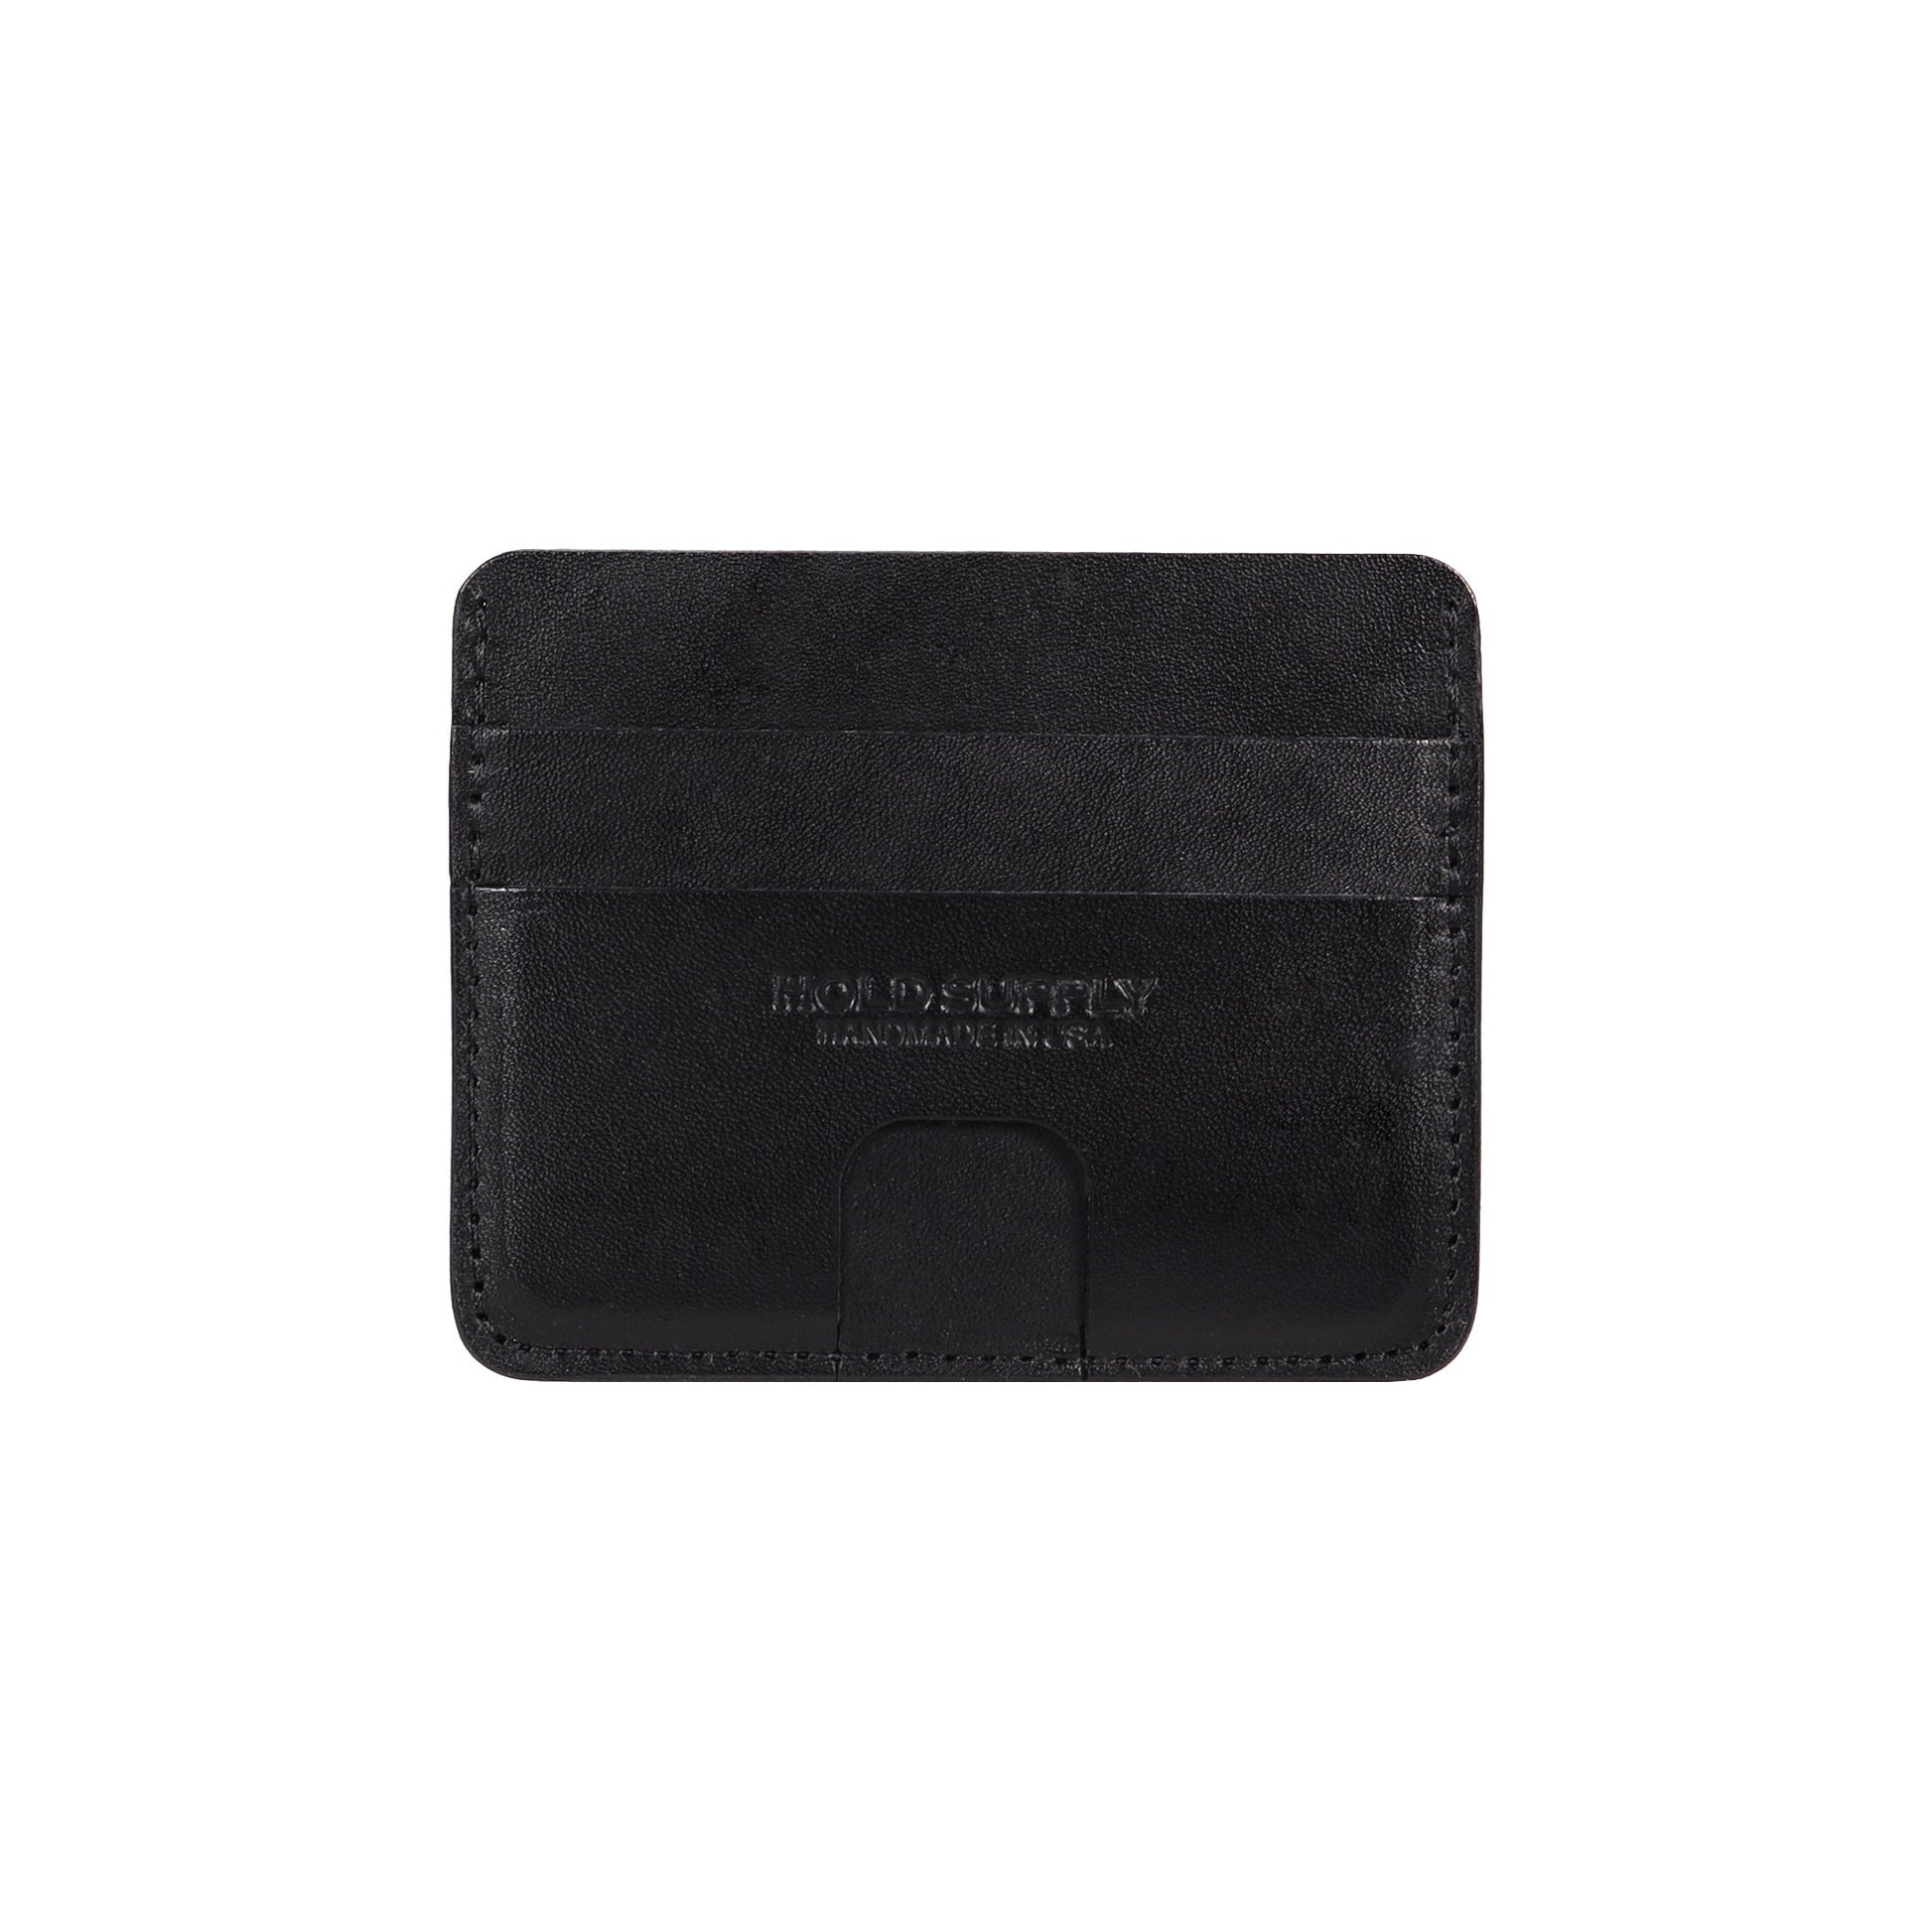 Black Leather Card Holder Wallet